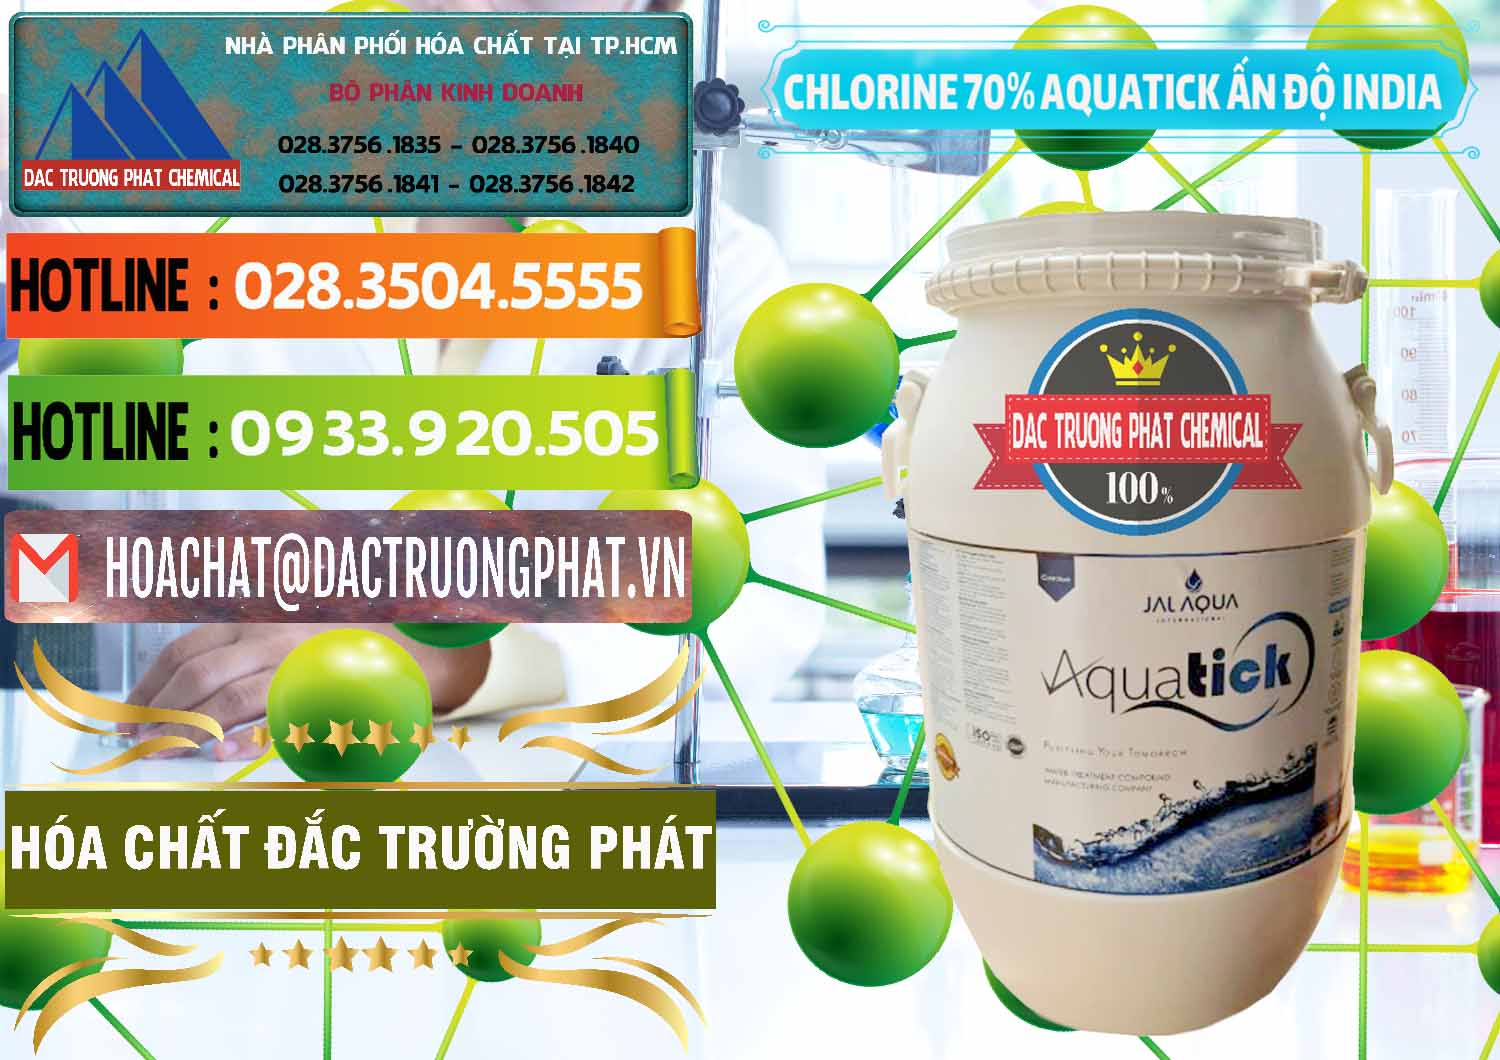 Công ty bán _ phân phối Chlorine – Clorin 70% Aquatick Jal Aqua Ấn Độ India - 0215 - Nơi bán _ cung cấp hóa chất tại TP.HCM - cungcaphoachat.com.vn